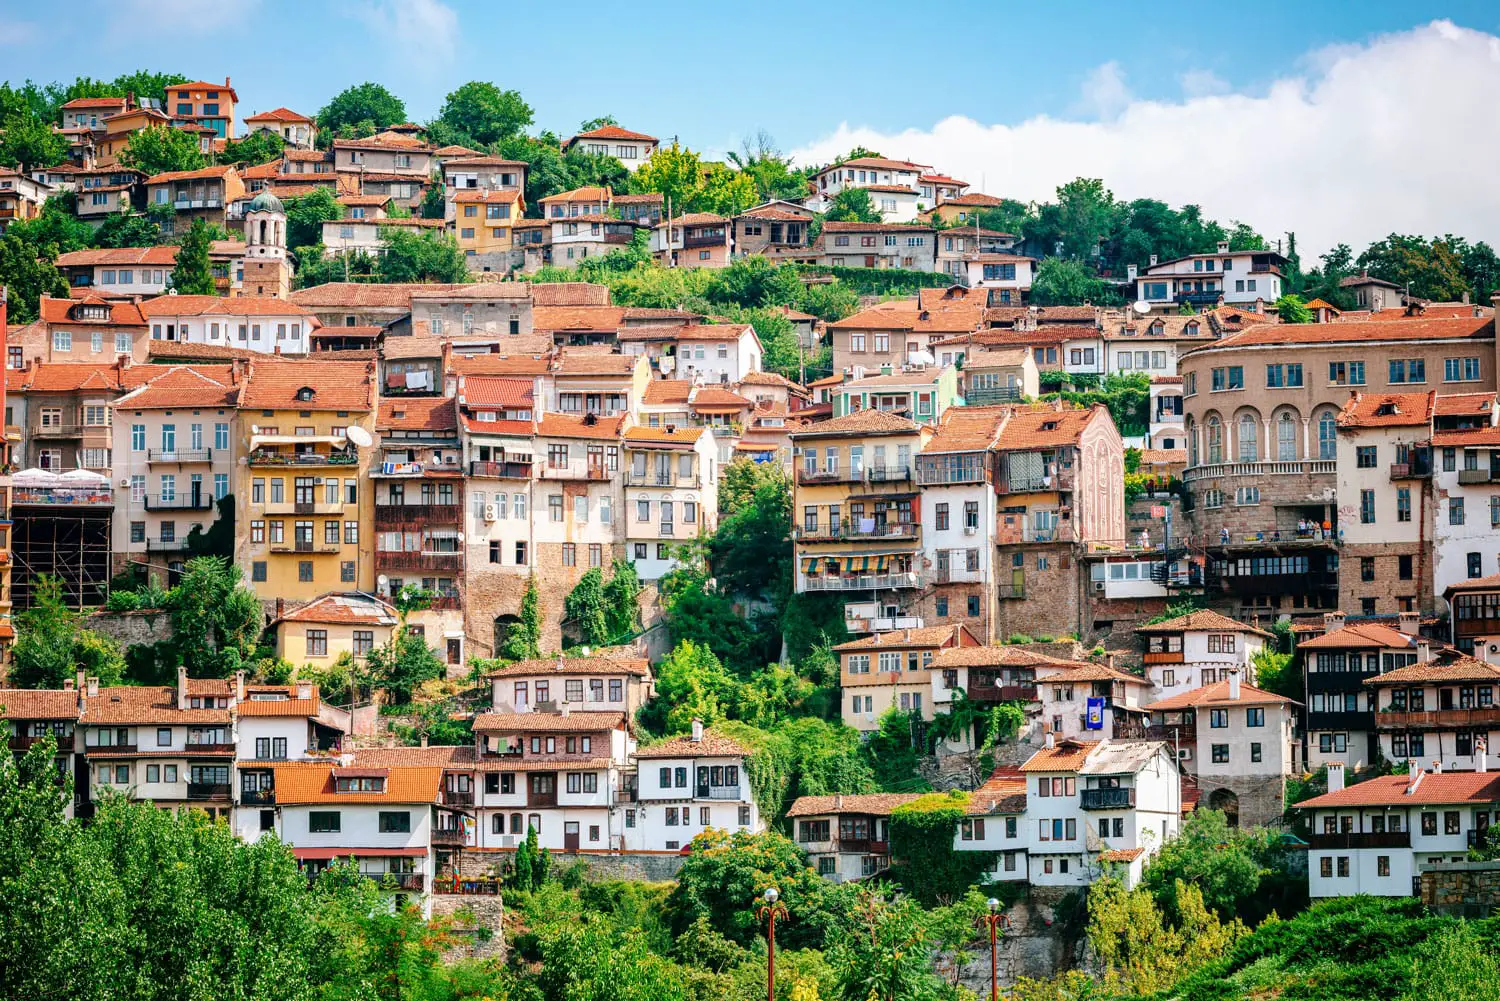 Άποψη του Βέλικο Τάρνοβο, μιας πόλης στη βορειοκεντρική Βουλγαρία